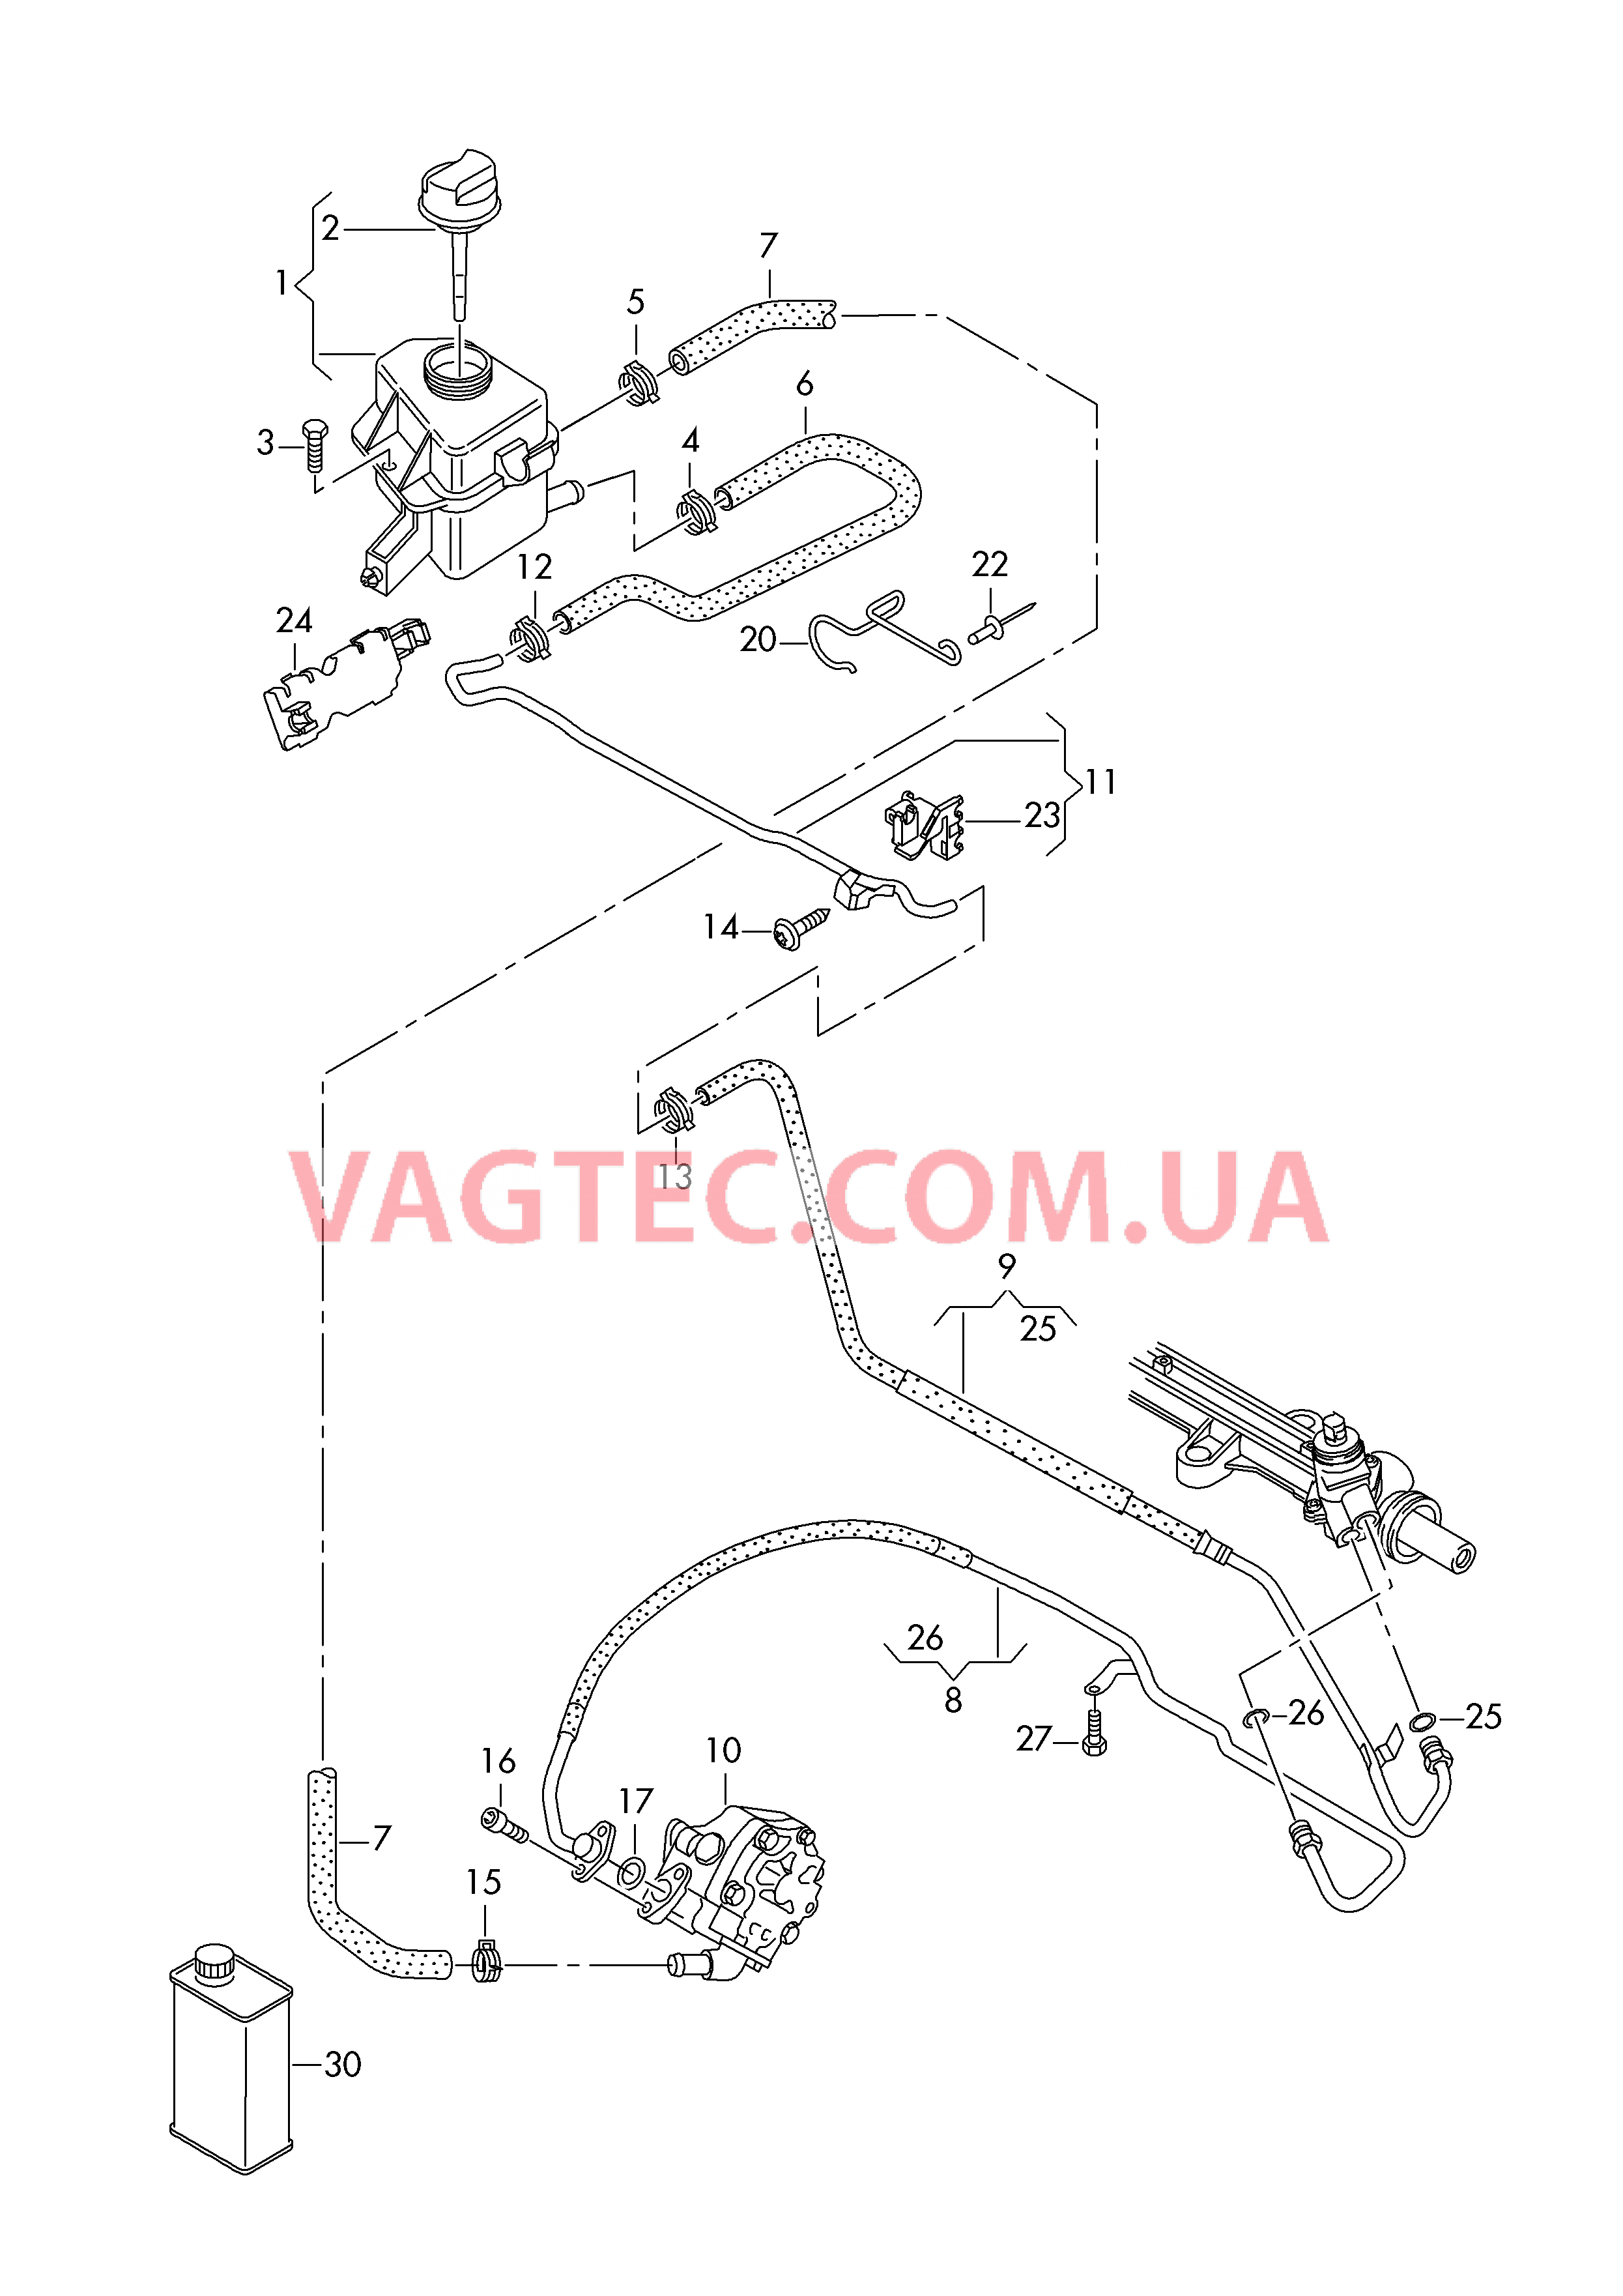 Масляный бачок с соединительными деталями, шлангами  для ГУPа  для VOLKSWAGEN Transporter 2019-1